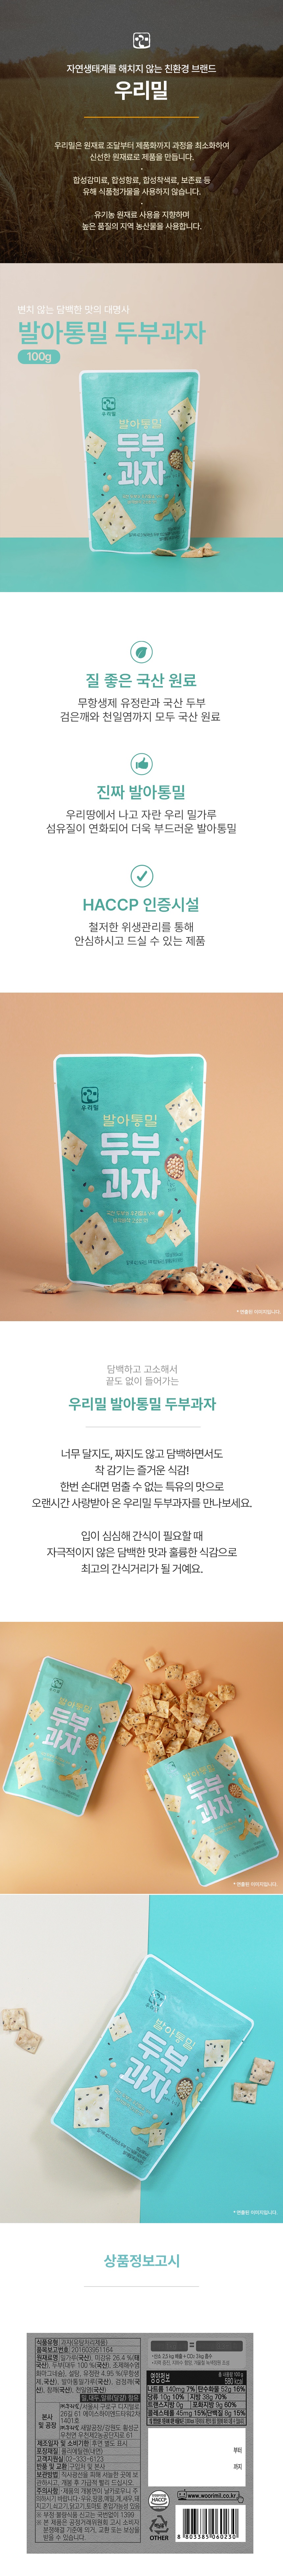 tofu_snack